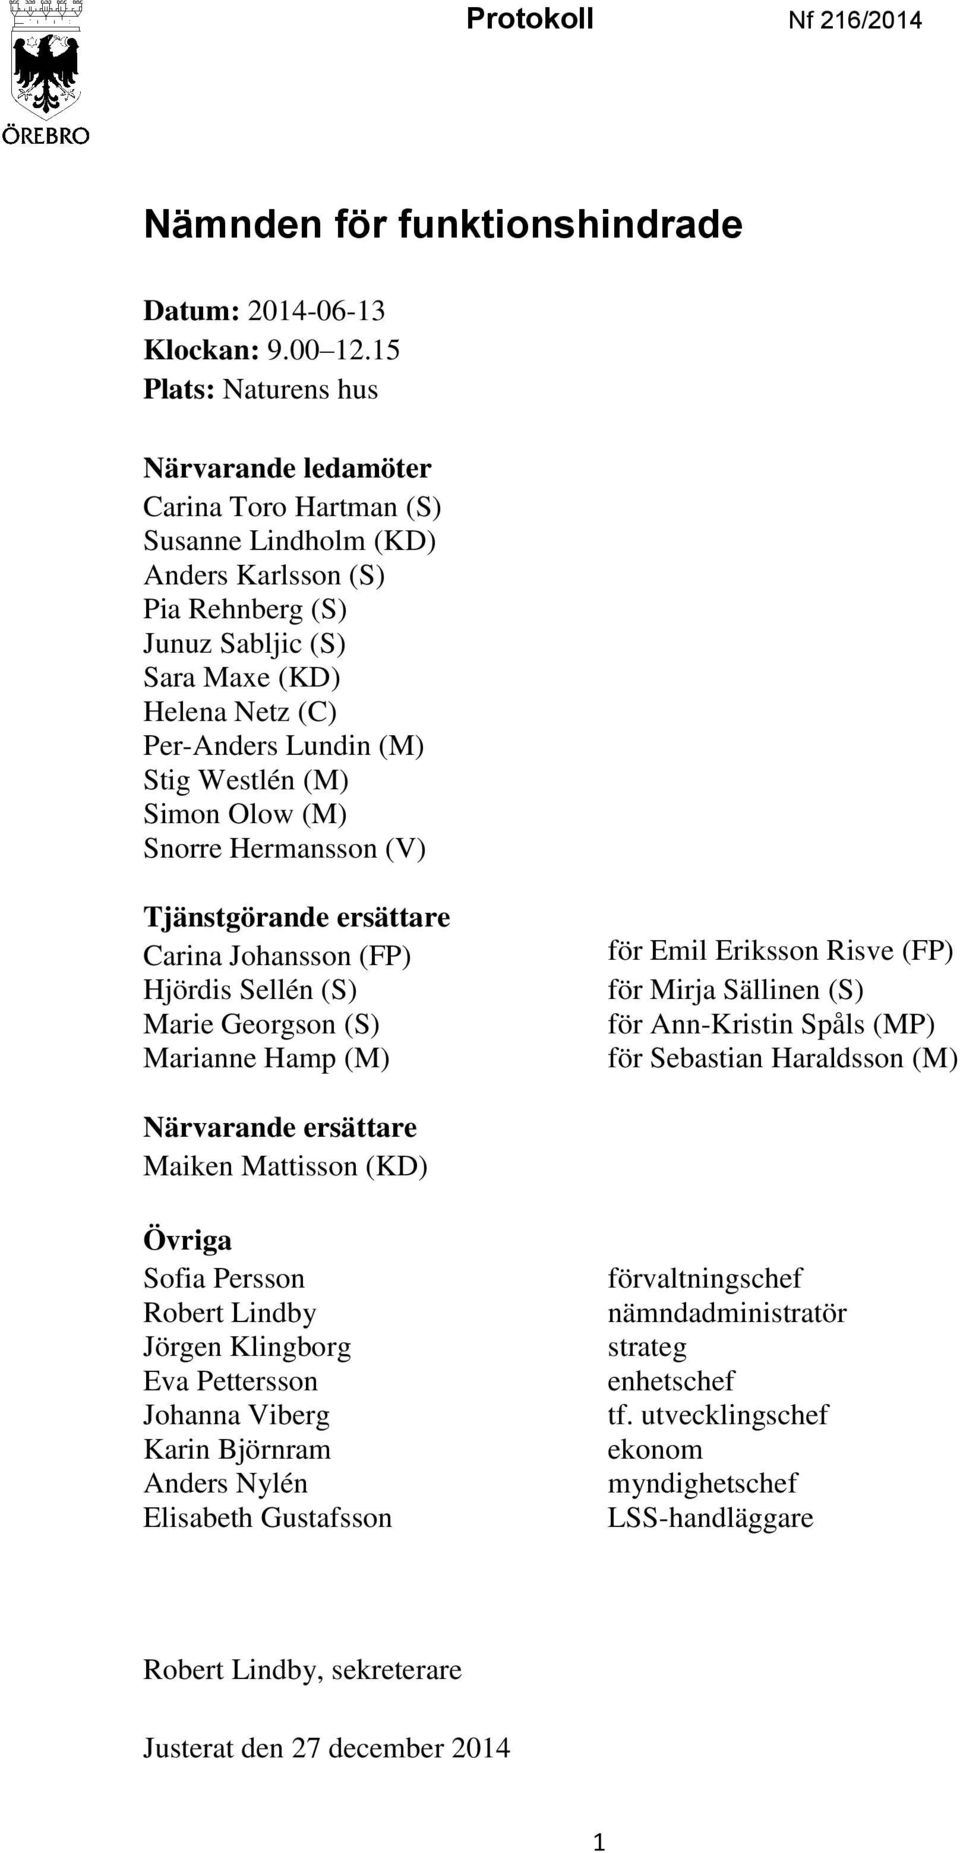 Stig Westlén (M) Simon Olow (M) Snorre Hermansson (V) Tjänstgörande ersättare Carina Johansson (FP) Hjördis Sellén (S) Marie Georgson (S) Marianne Hamp (M) för Emil Eriksson Risve (FP) för Mirja